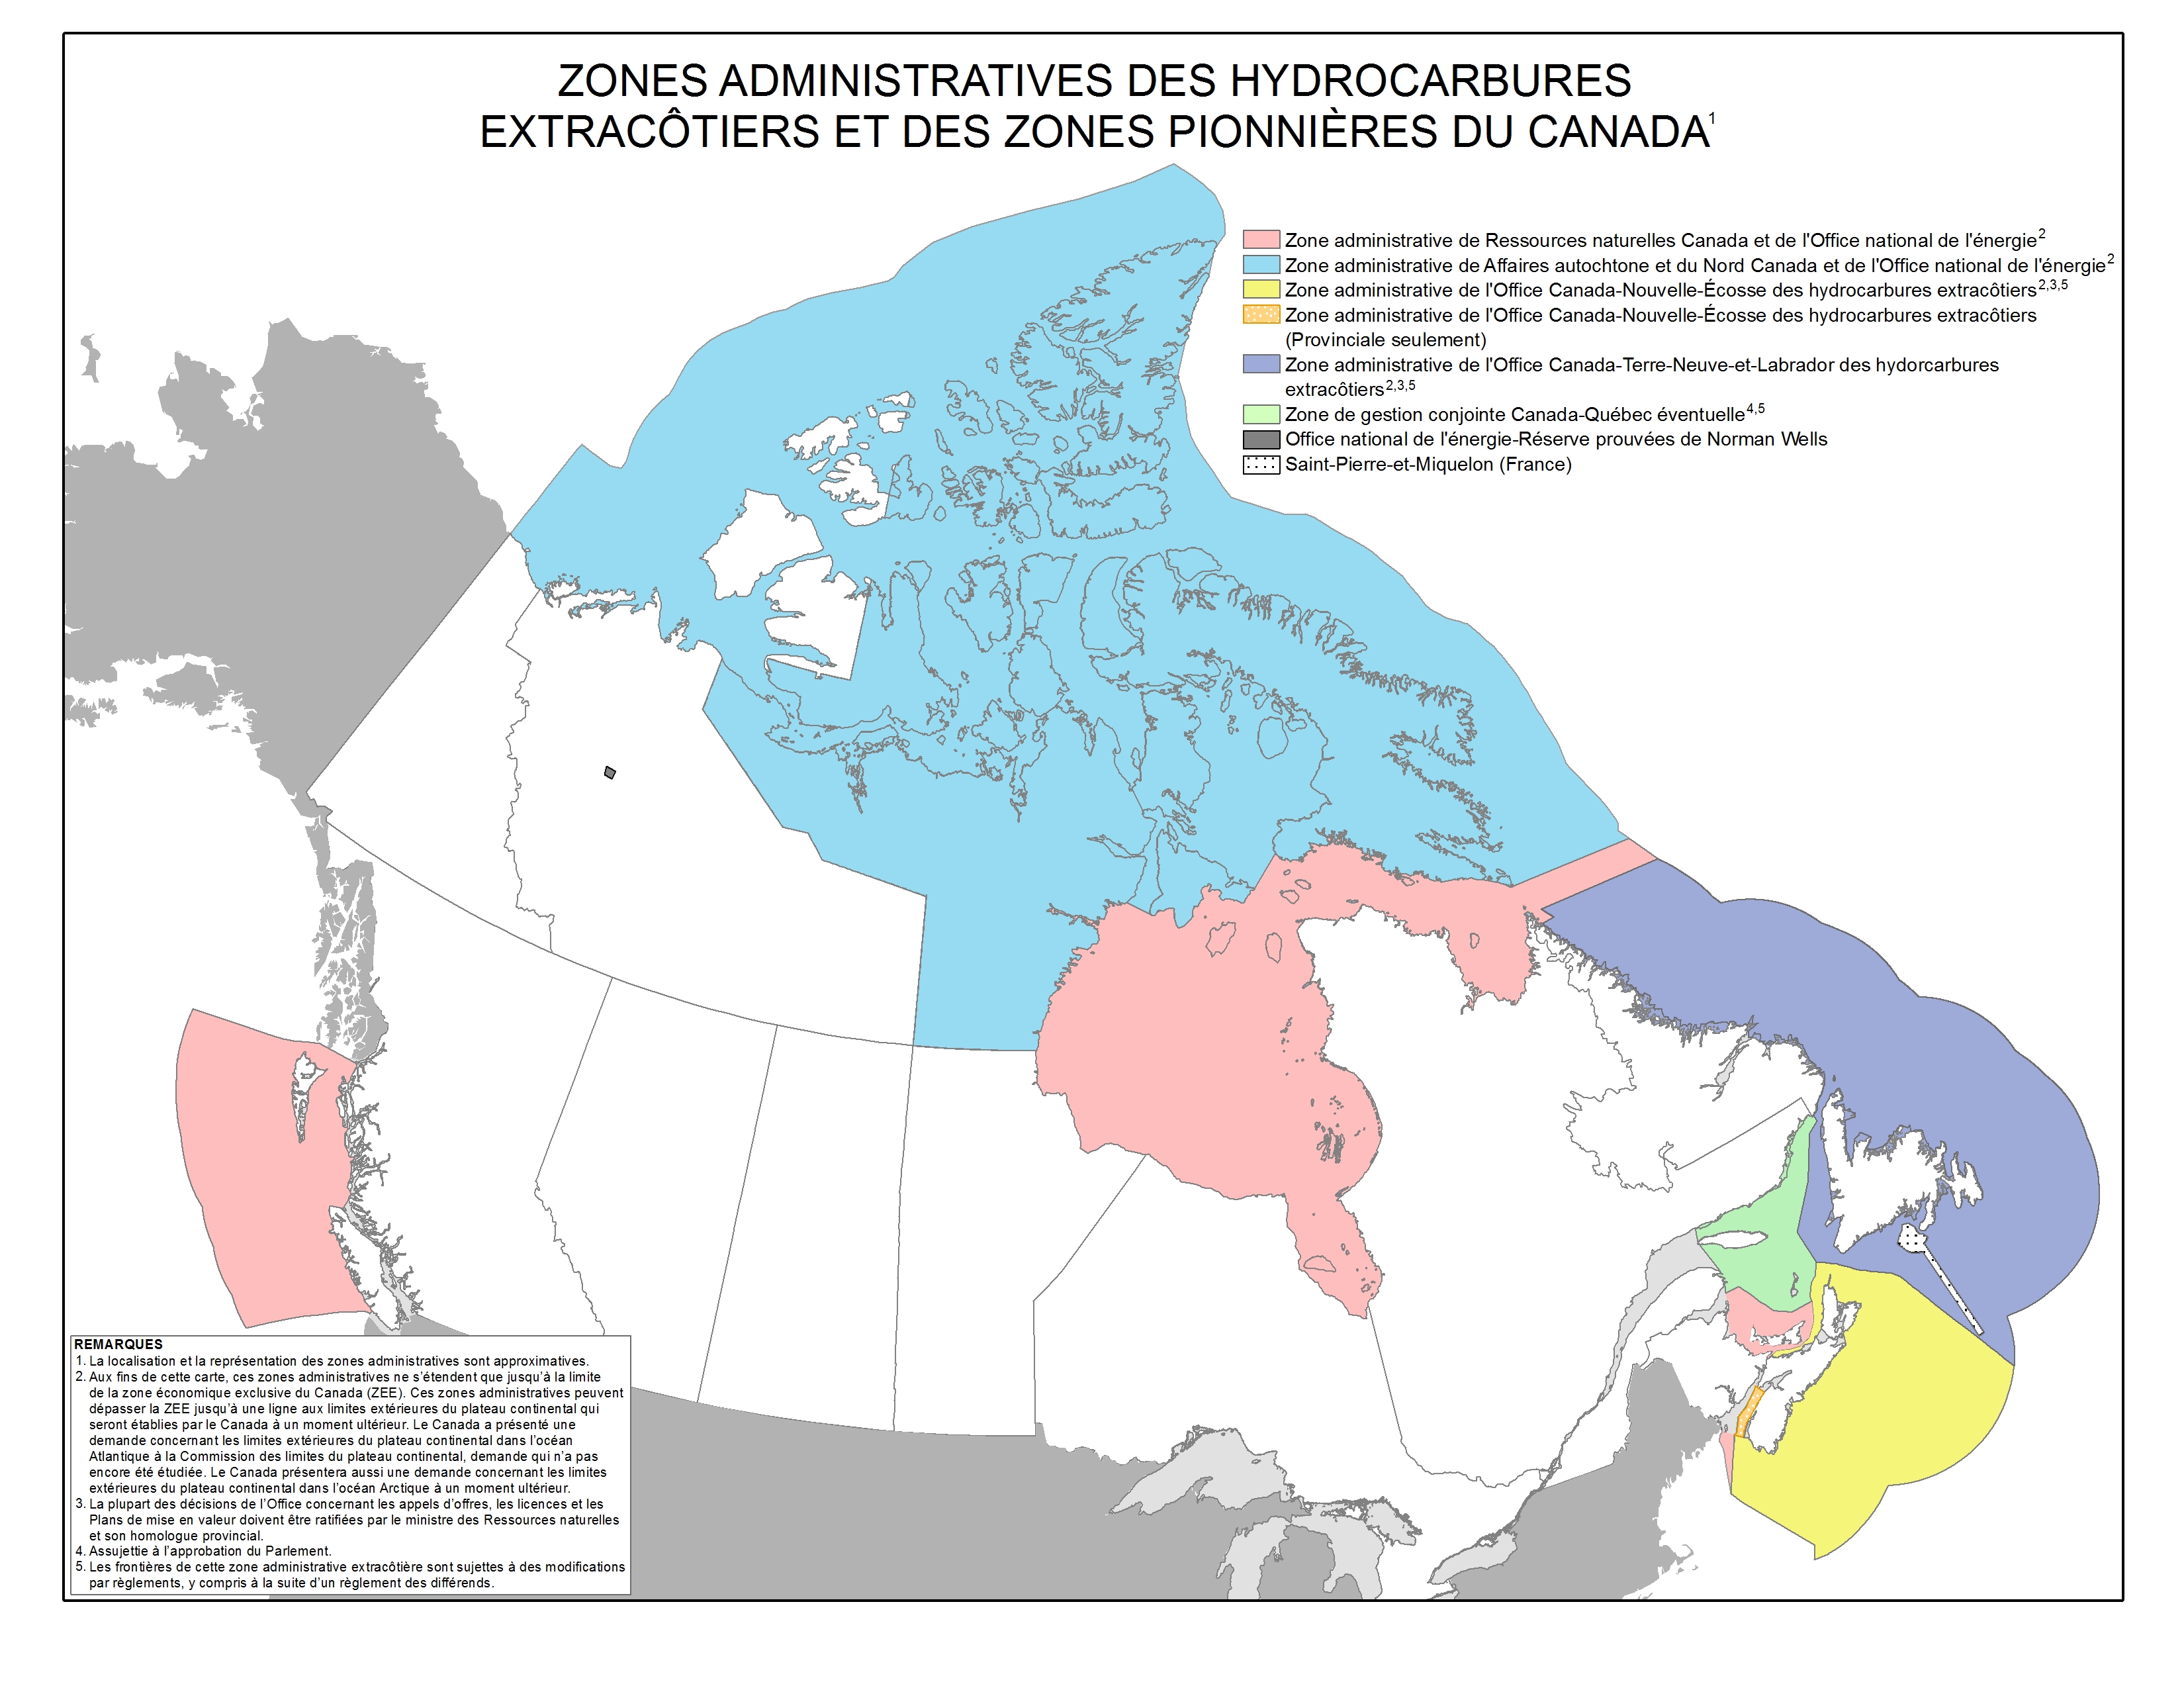 Compétence en matière de pétrole et gaz dans les zones extracôtières et pionnières au Canada